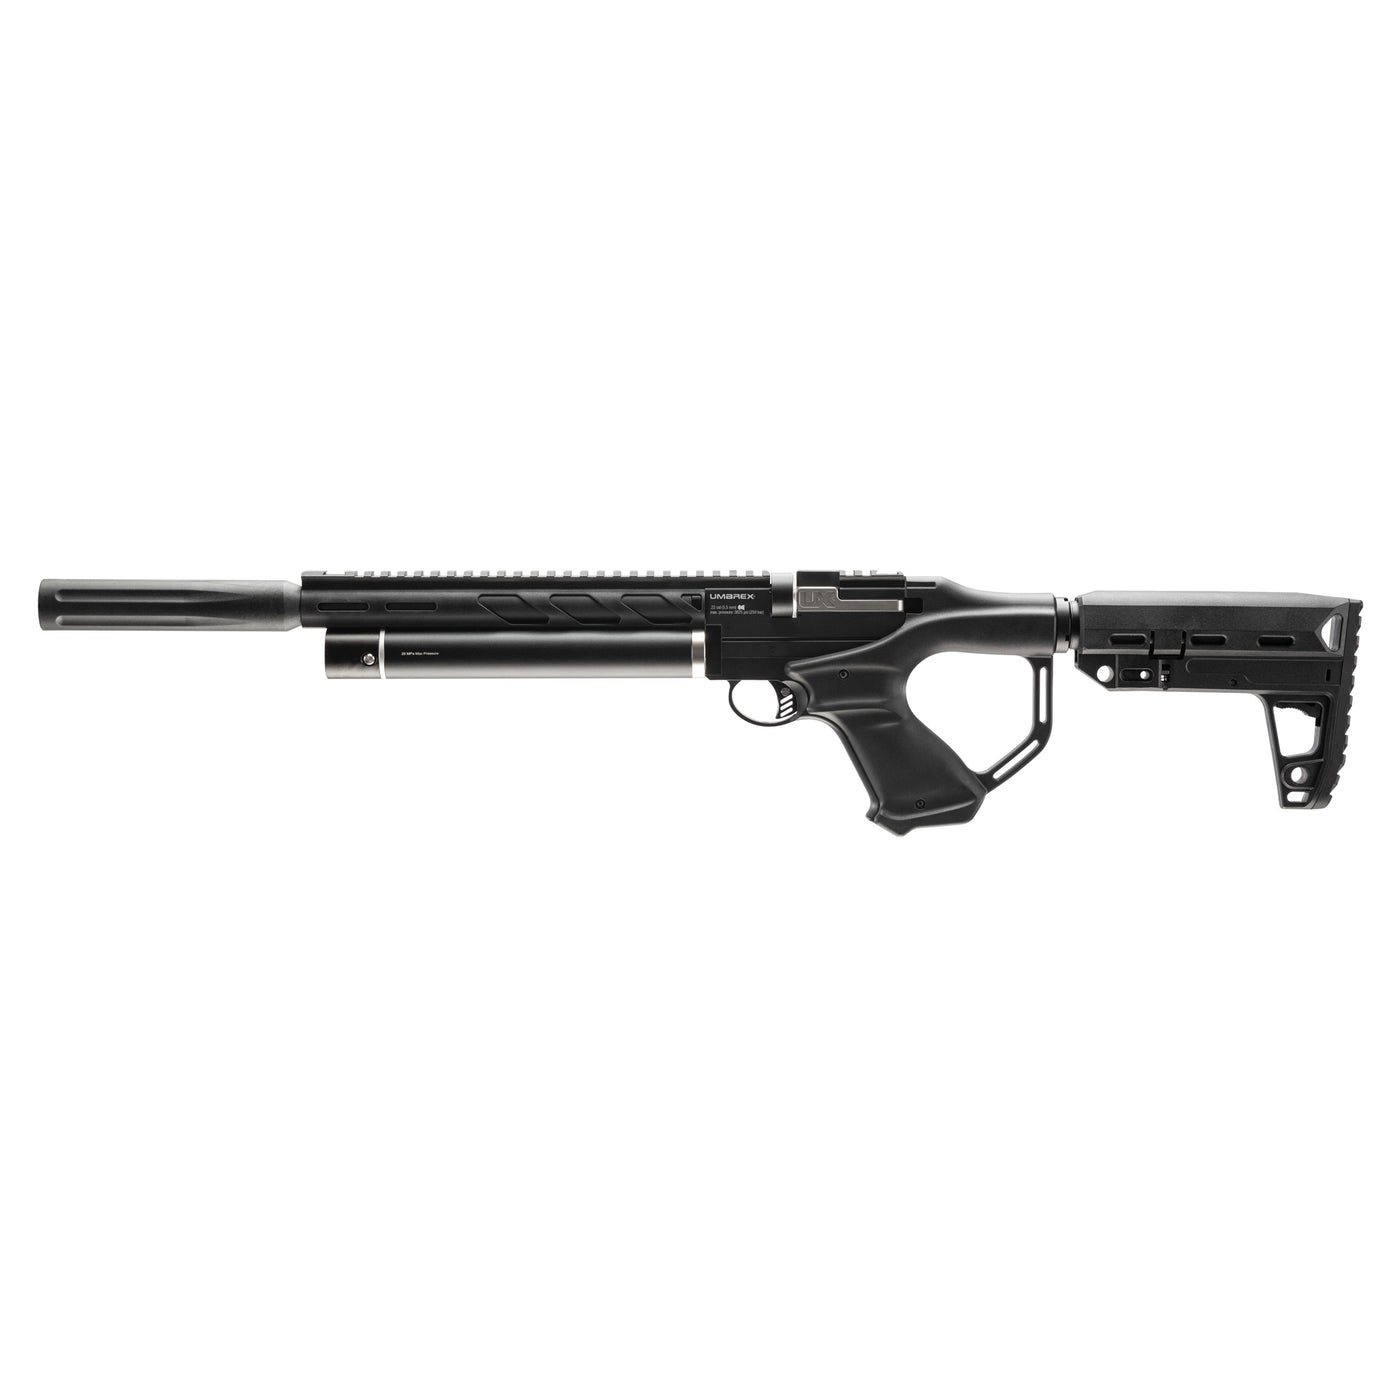 Umx Notos Pcp Carbine 22 Pellet 12rd